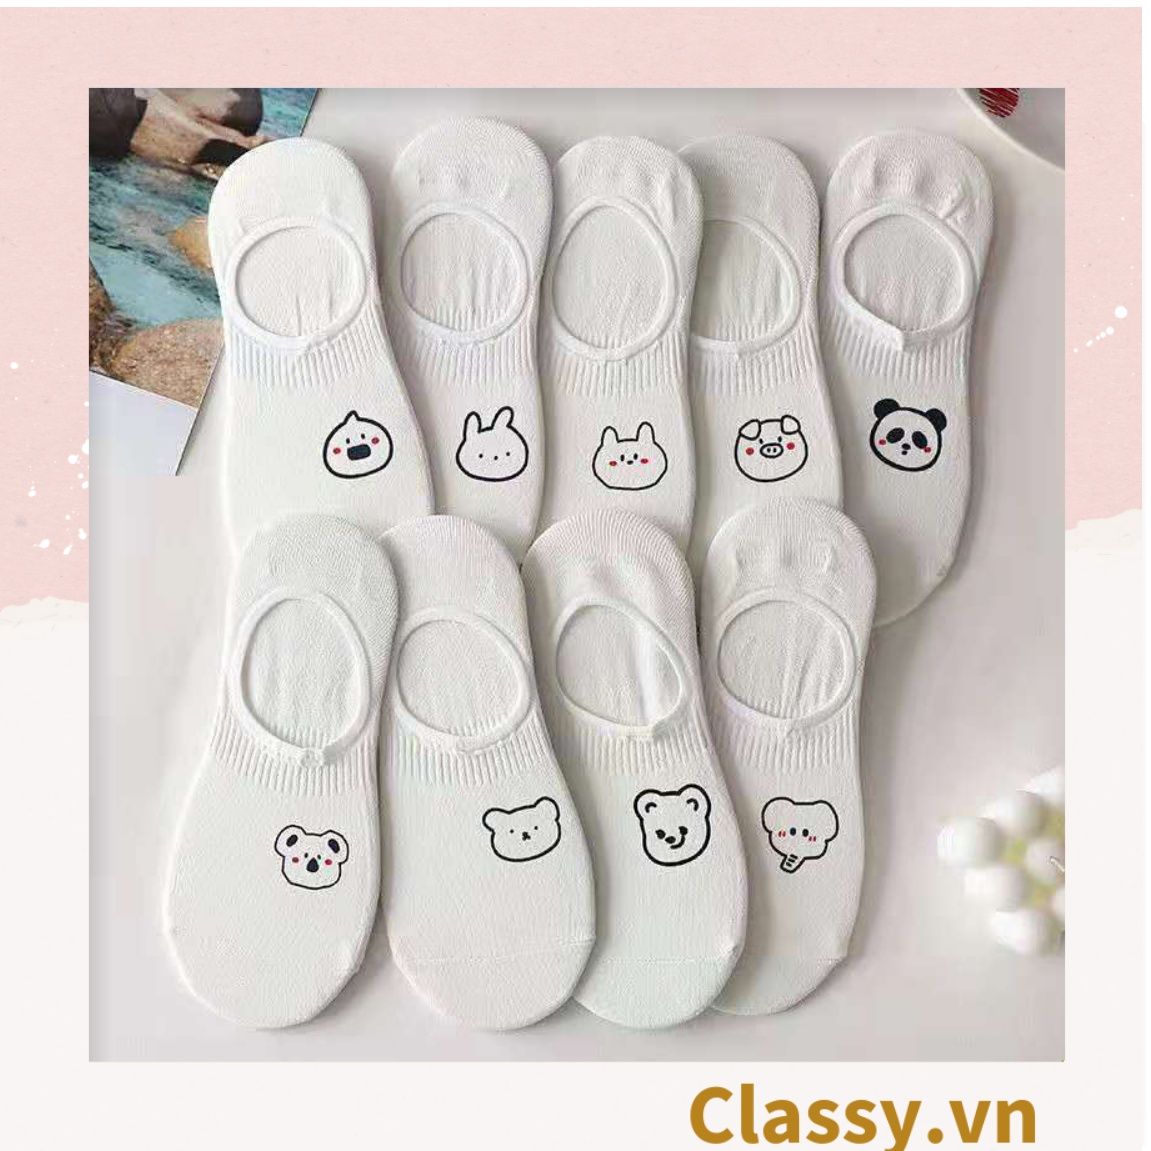  Classy Tất nữ vớ nữ cotton màu trắng mix họa tiết cute Hàn Quốc G1388 